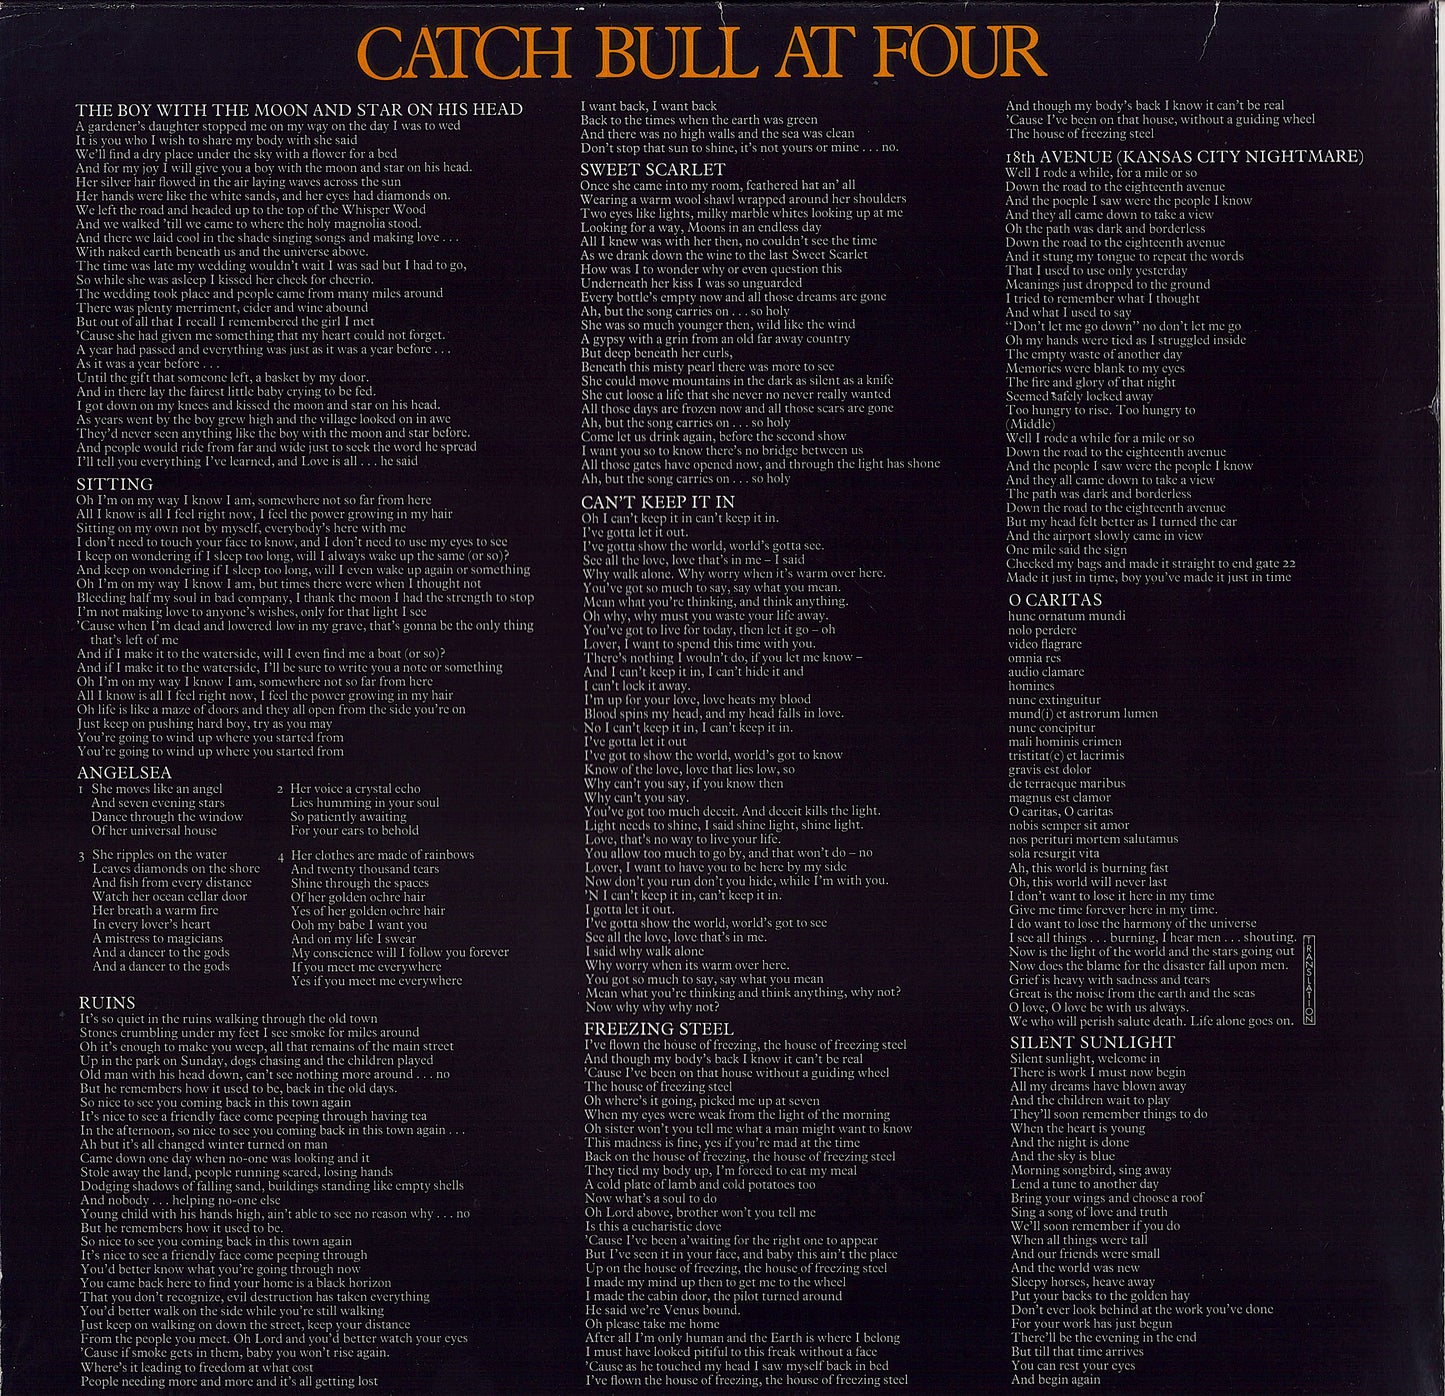 Cat Stevens - Catch Bull At Four Vinyl LP